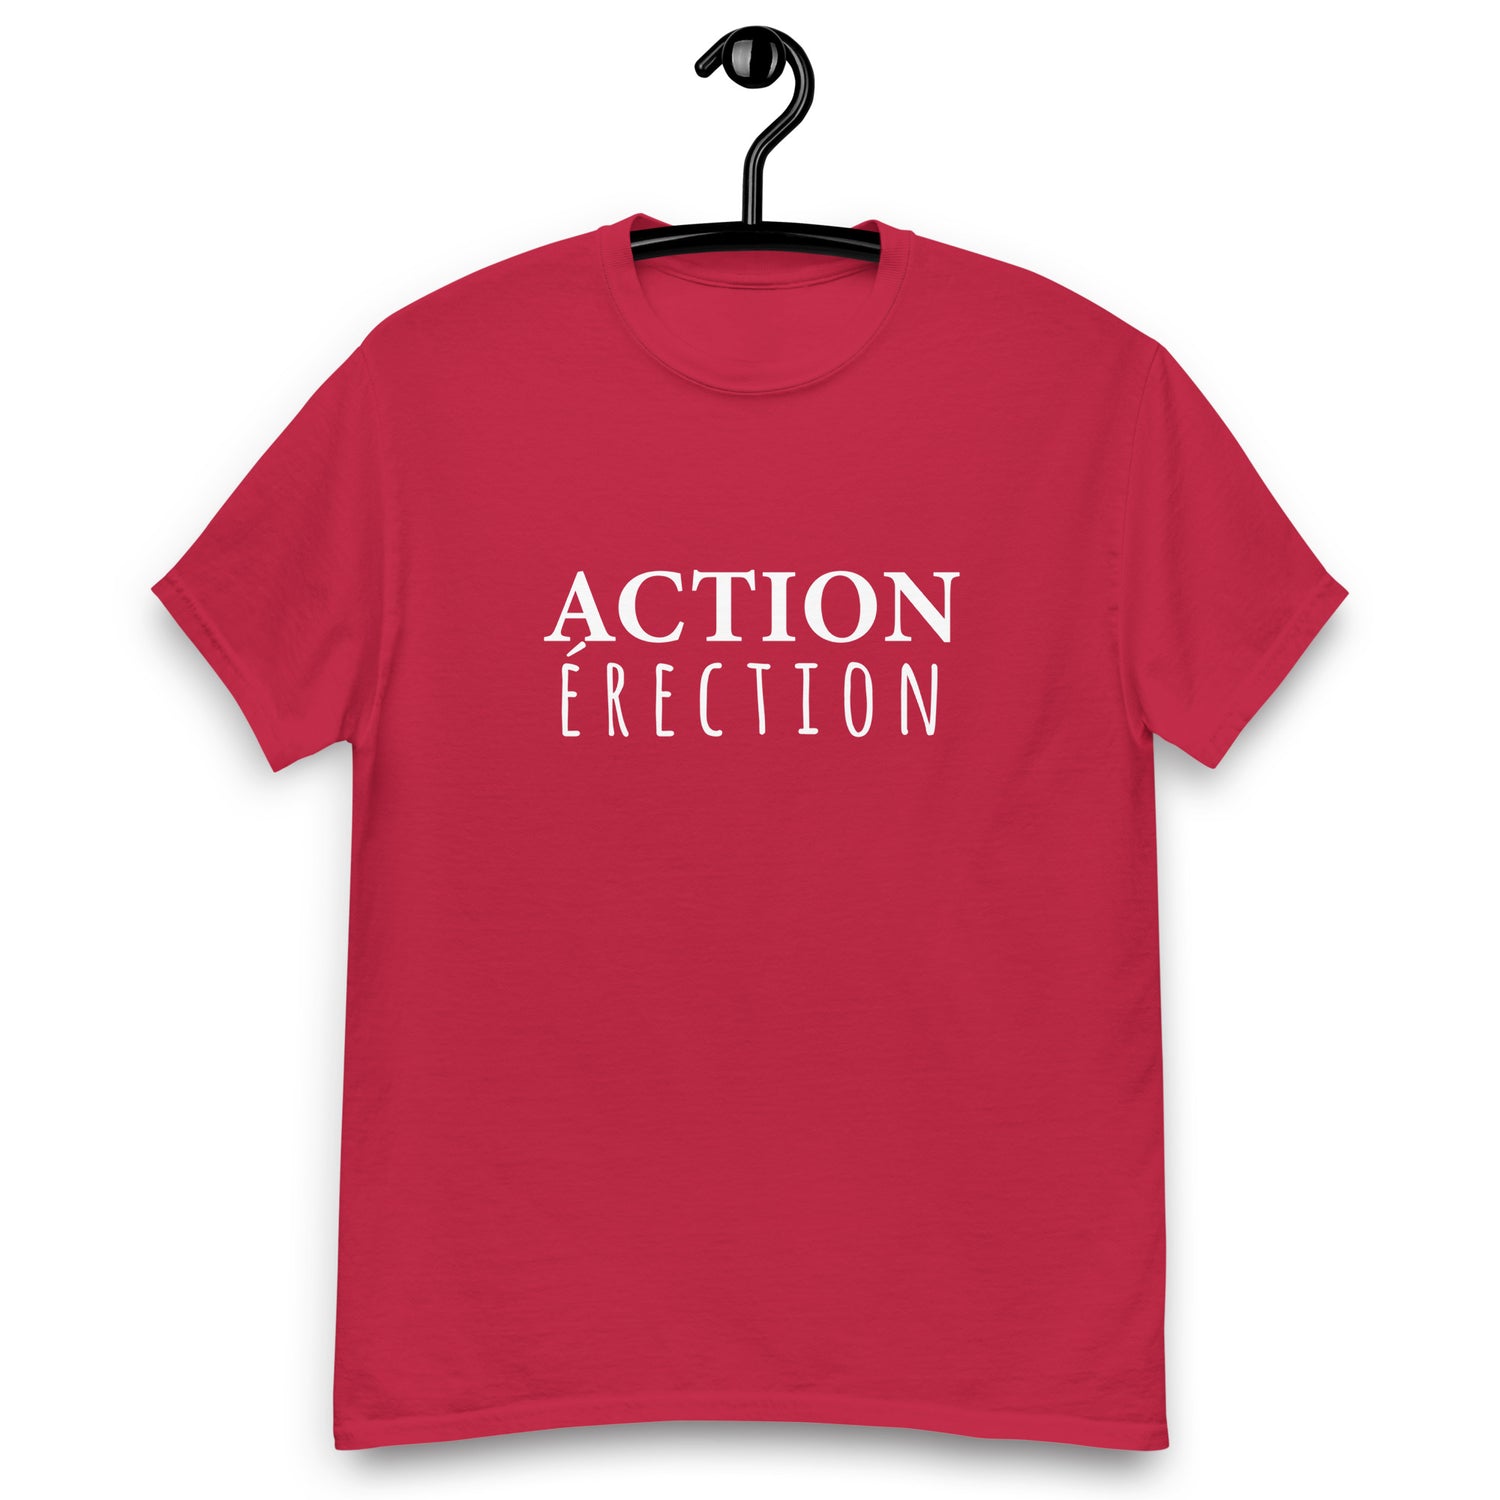 Action érection - T-shirt classique homme